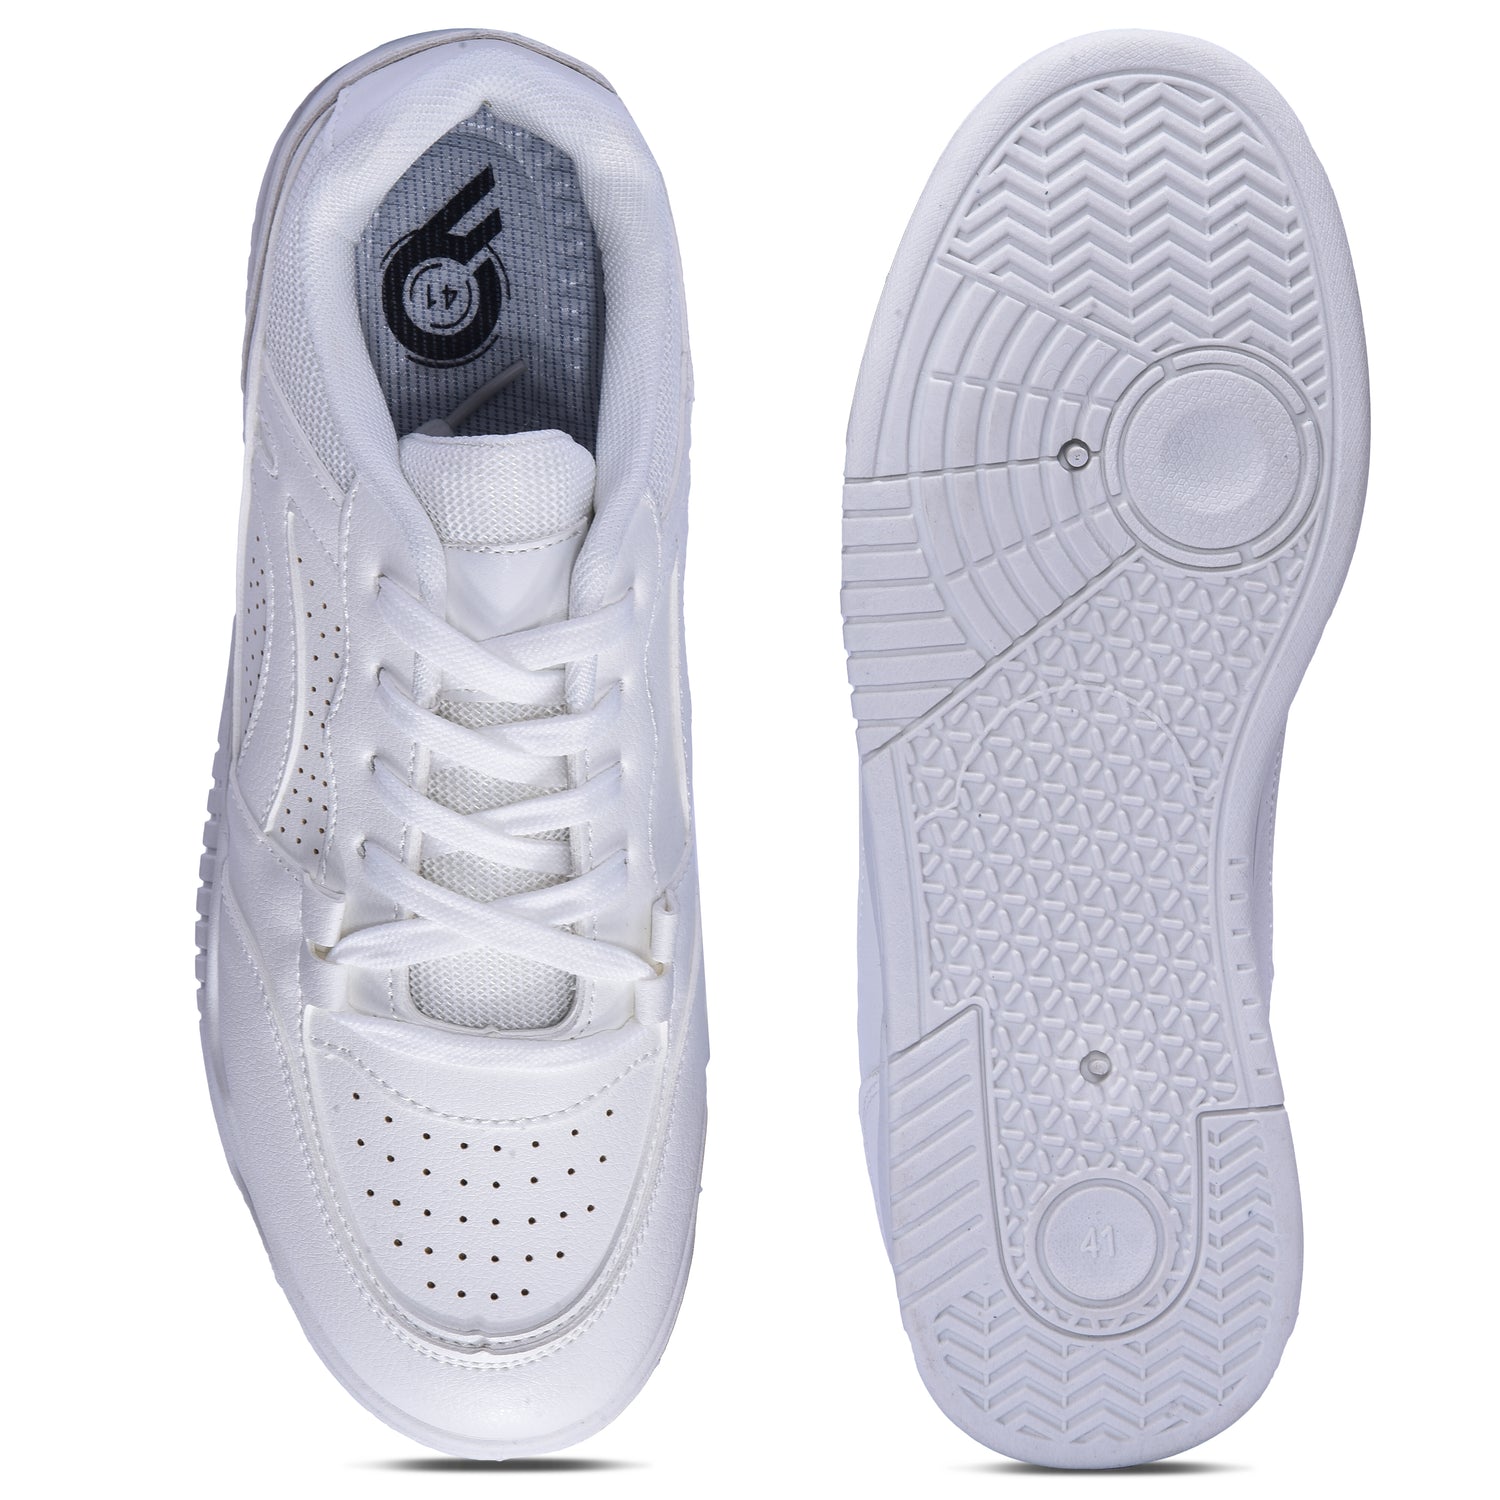 Calcetto CLT-2010 Full White Sneaker For Men